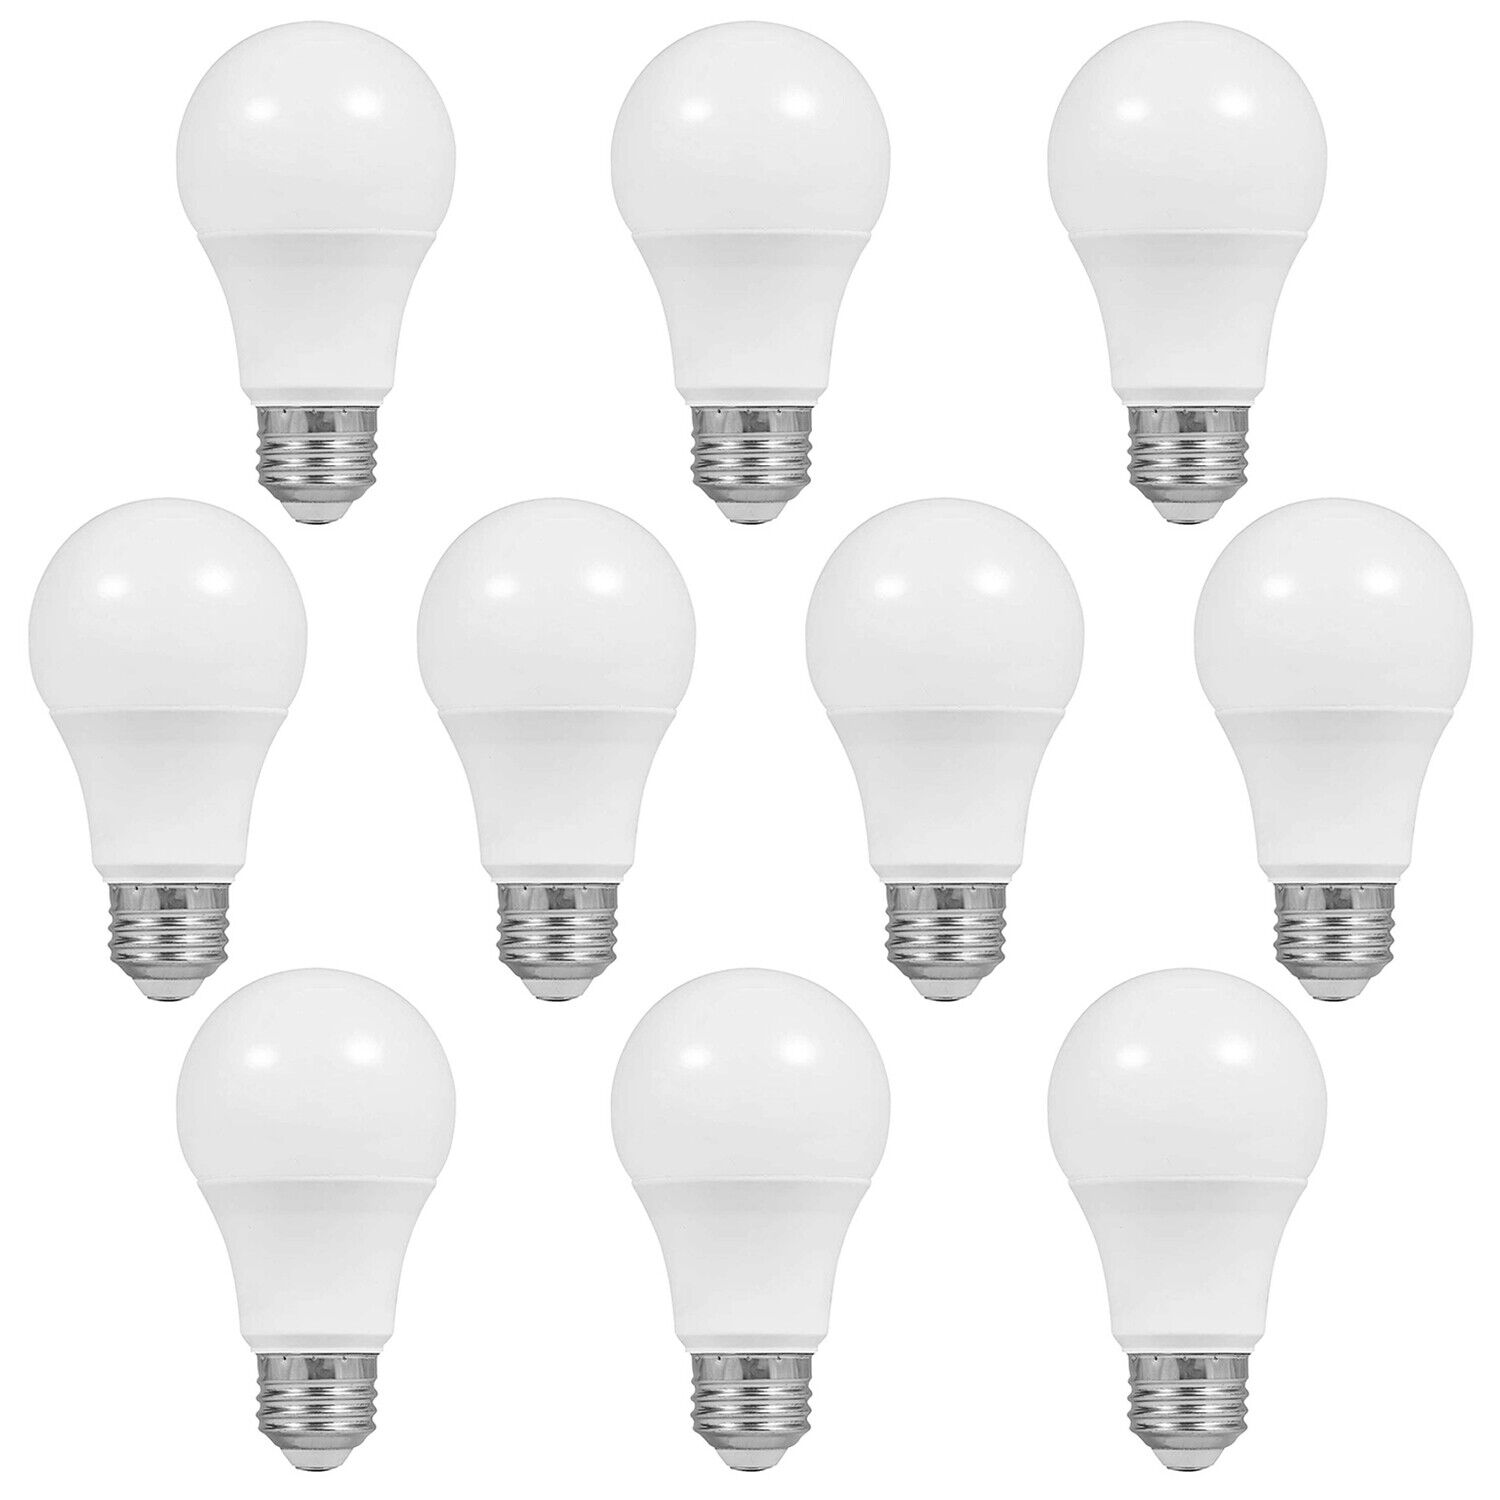 LS [10-Pack] E26 Base 5000K Daylight LED Light Bulbs, 9.5W 800LM UL Listed